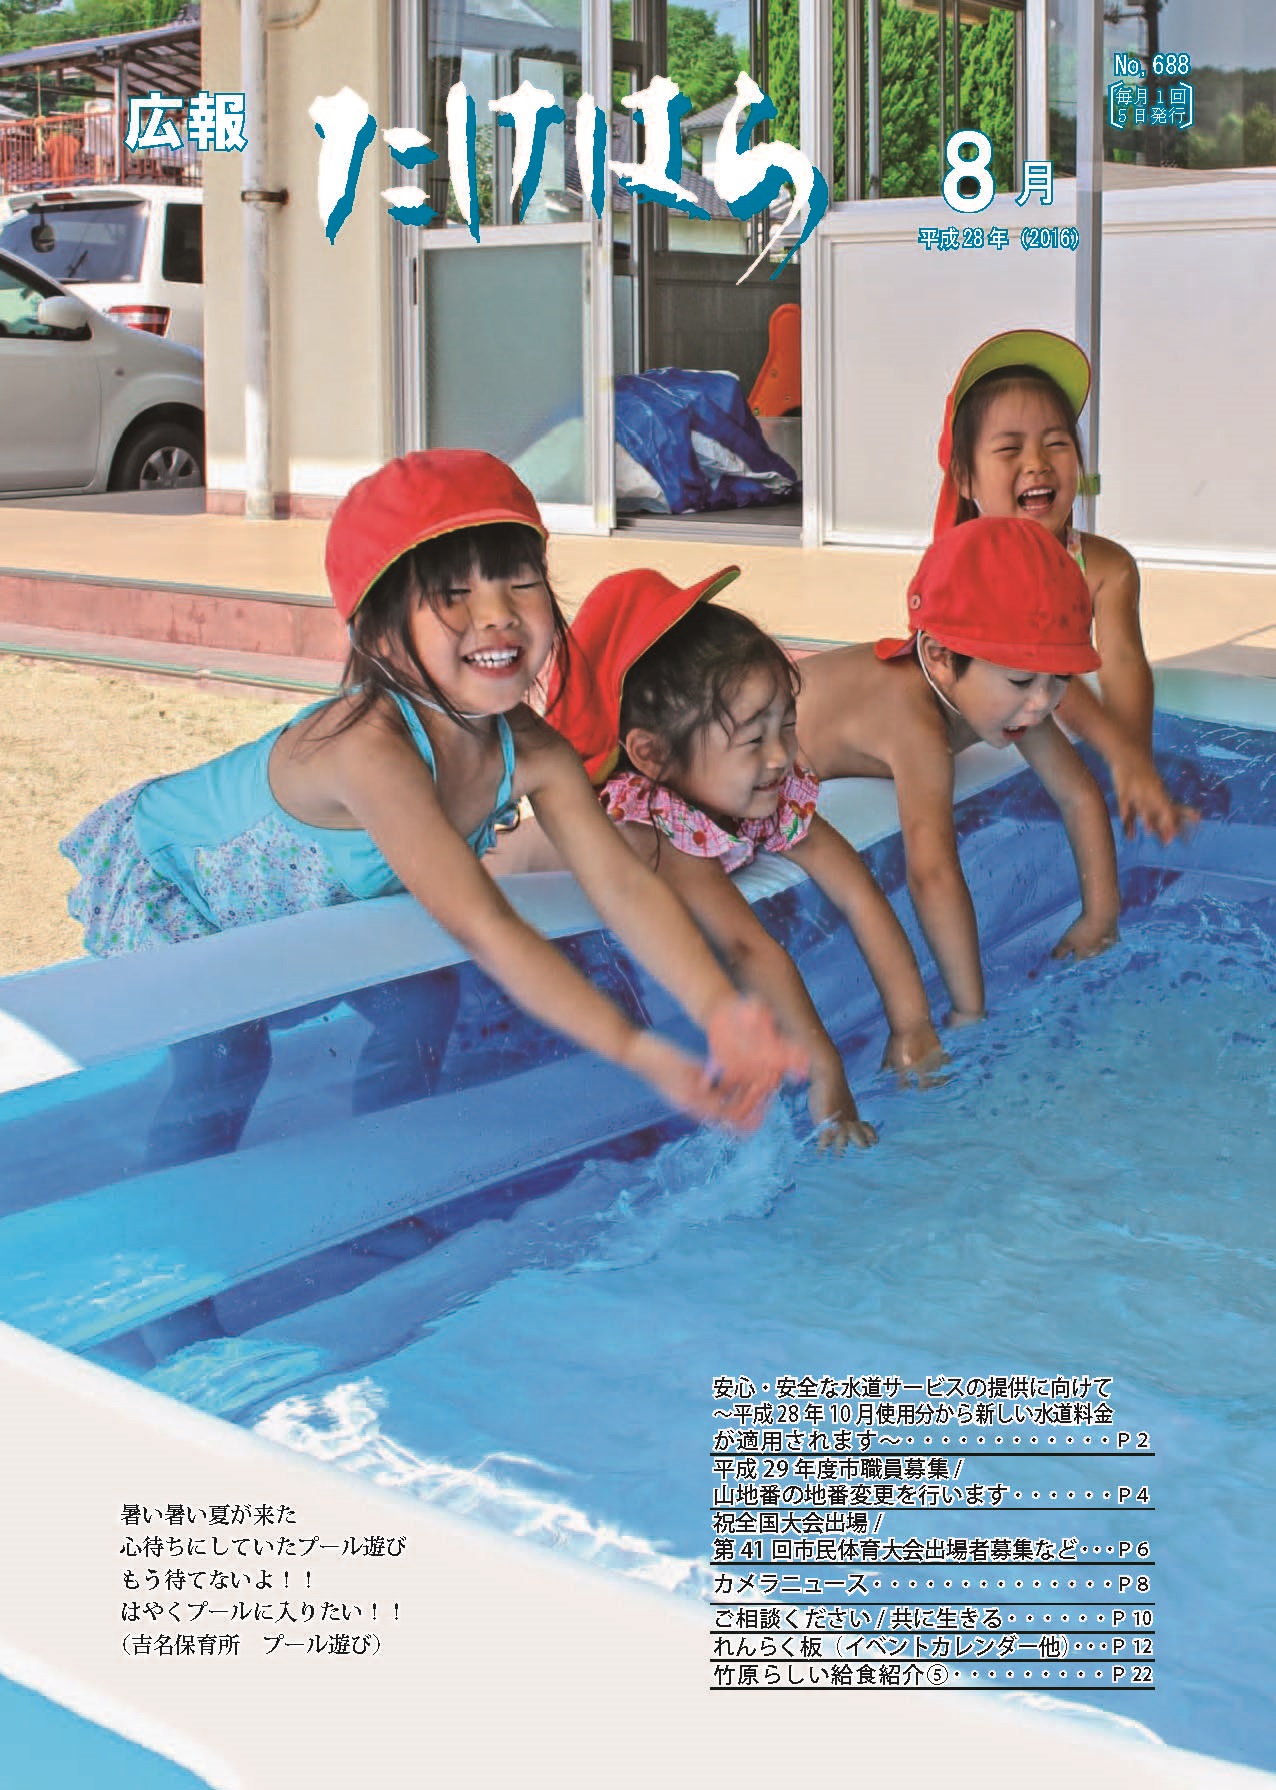 広報たけはら平成28年8月号表紙「吉名保育所プール遊び」